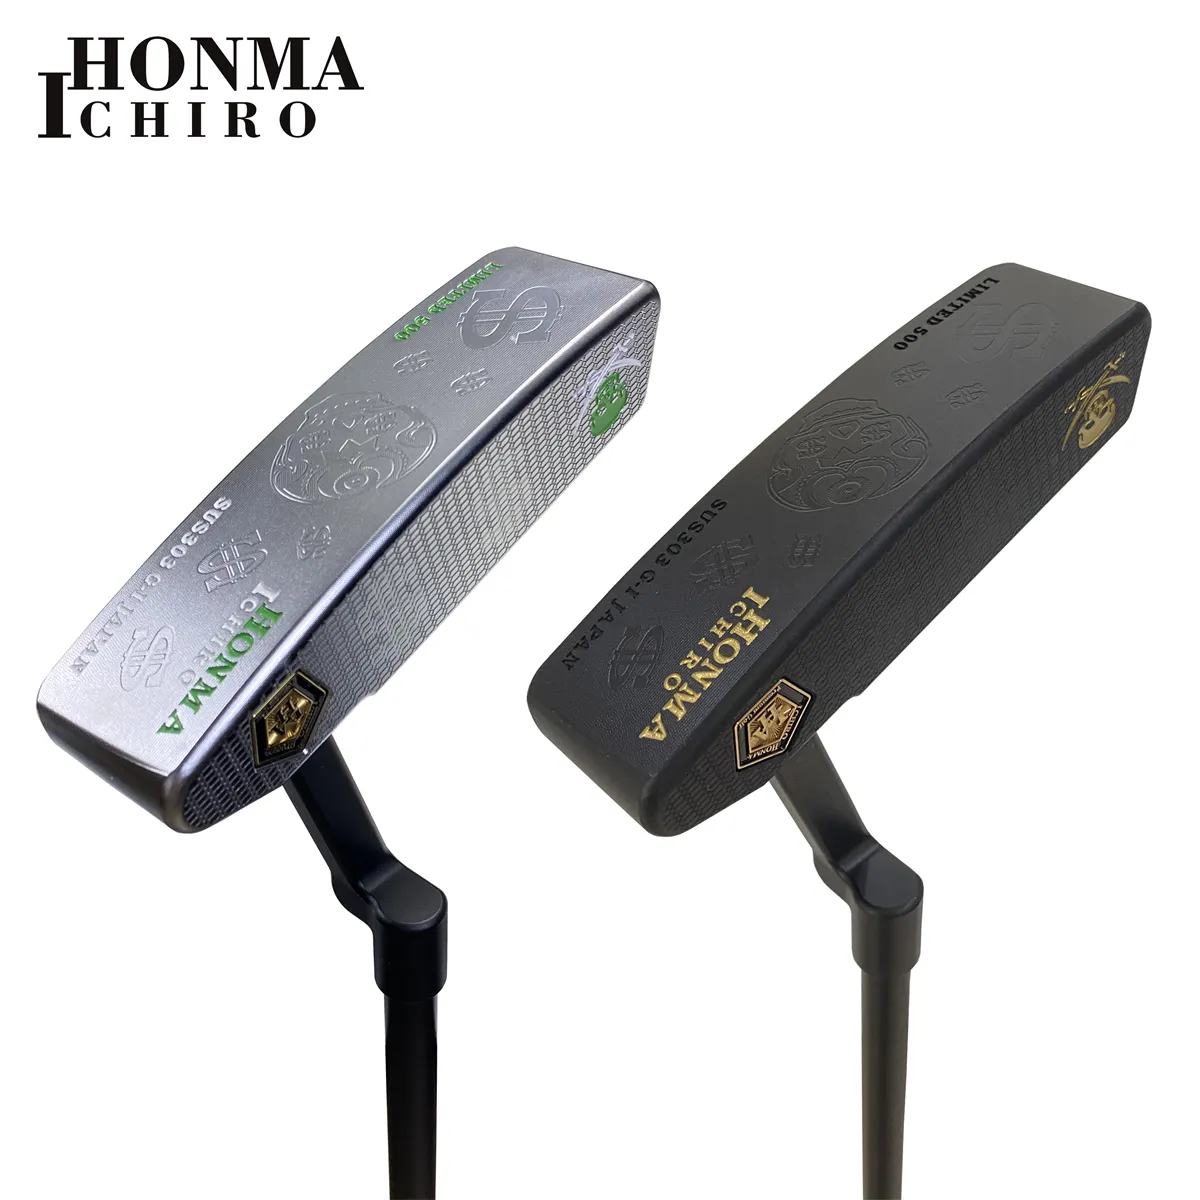 イチロ・ホンマ・ゴルフ・クラブ限定版ダークナイトシリーズG-IIIヘッドカバー付きオックスホーンパター